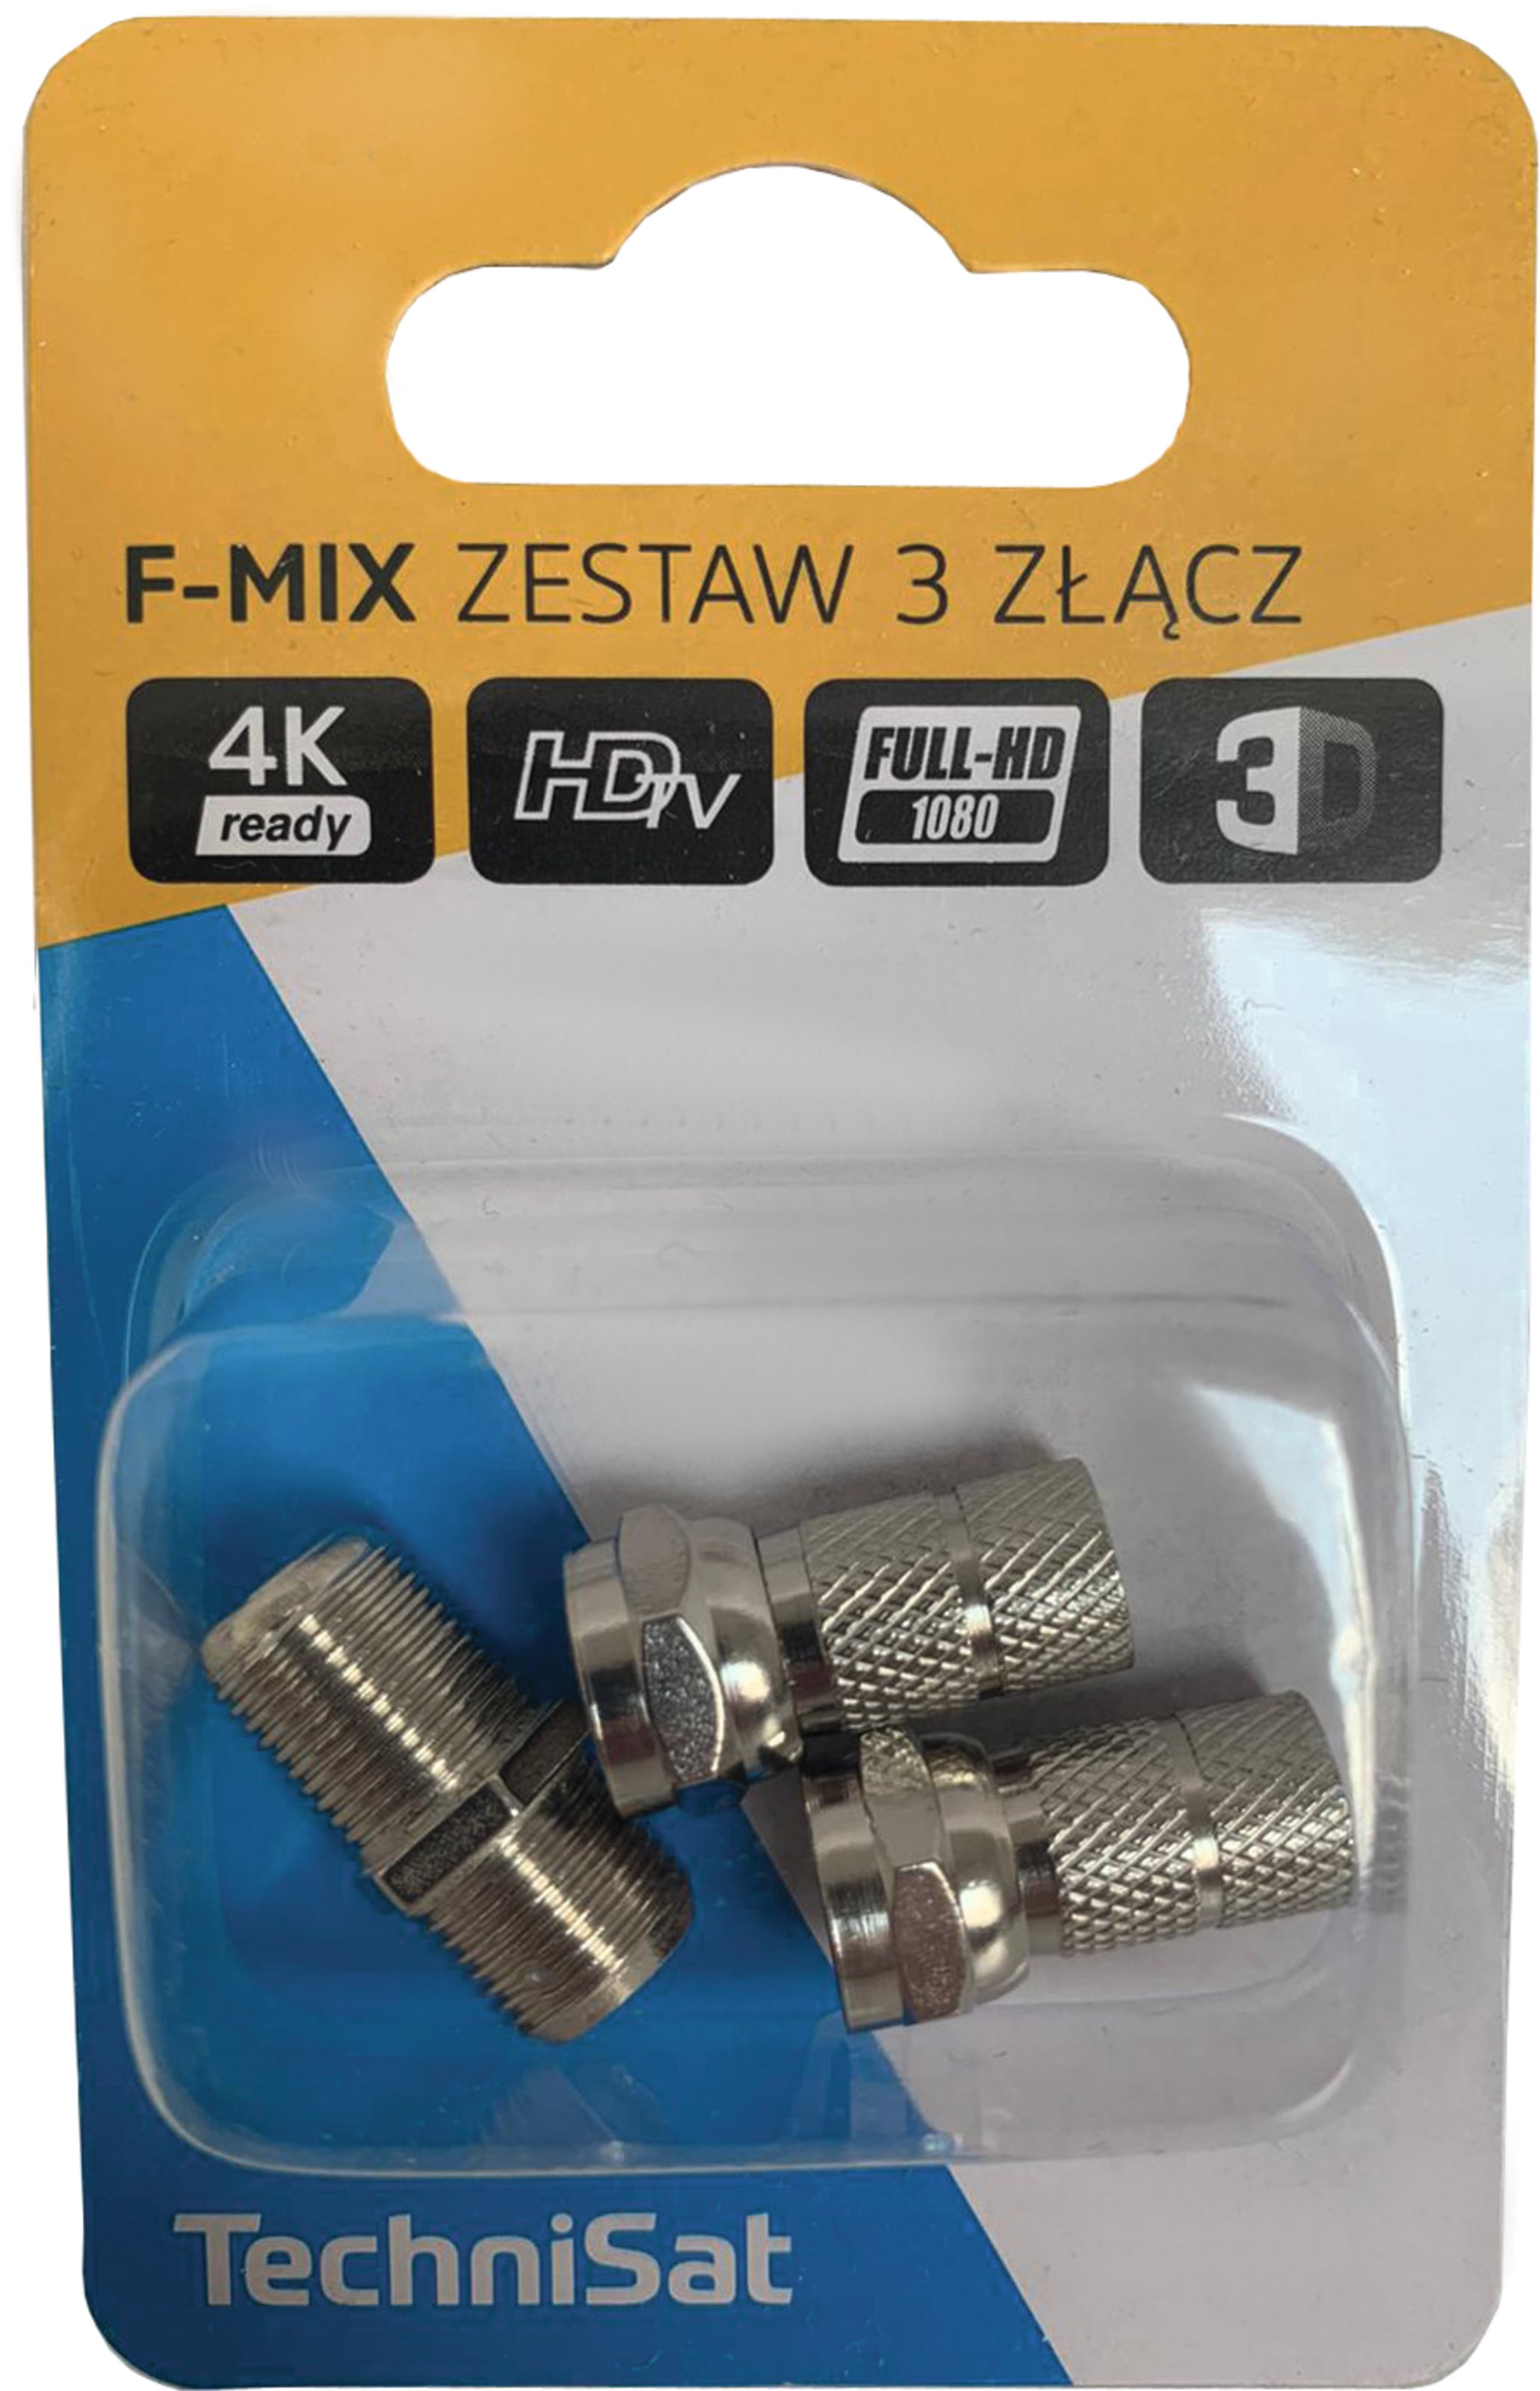 Zestaw F-Mix 3